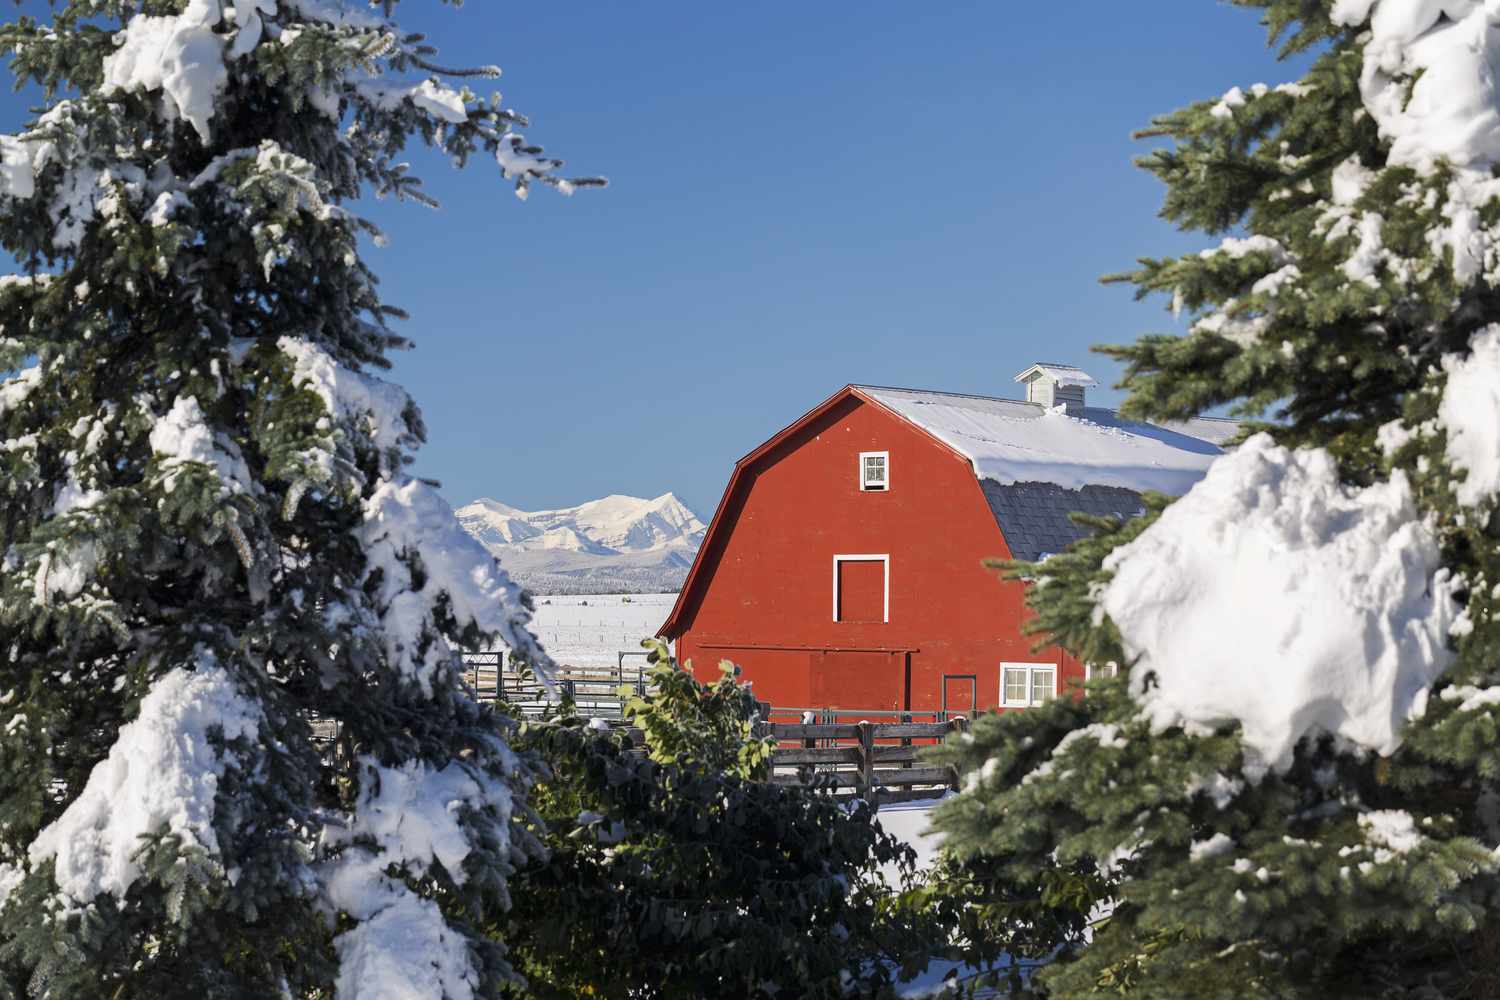 Escena invernal con granero rojo, nieve, árboles de hoja perenne y montañas.